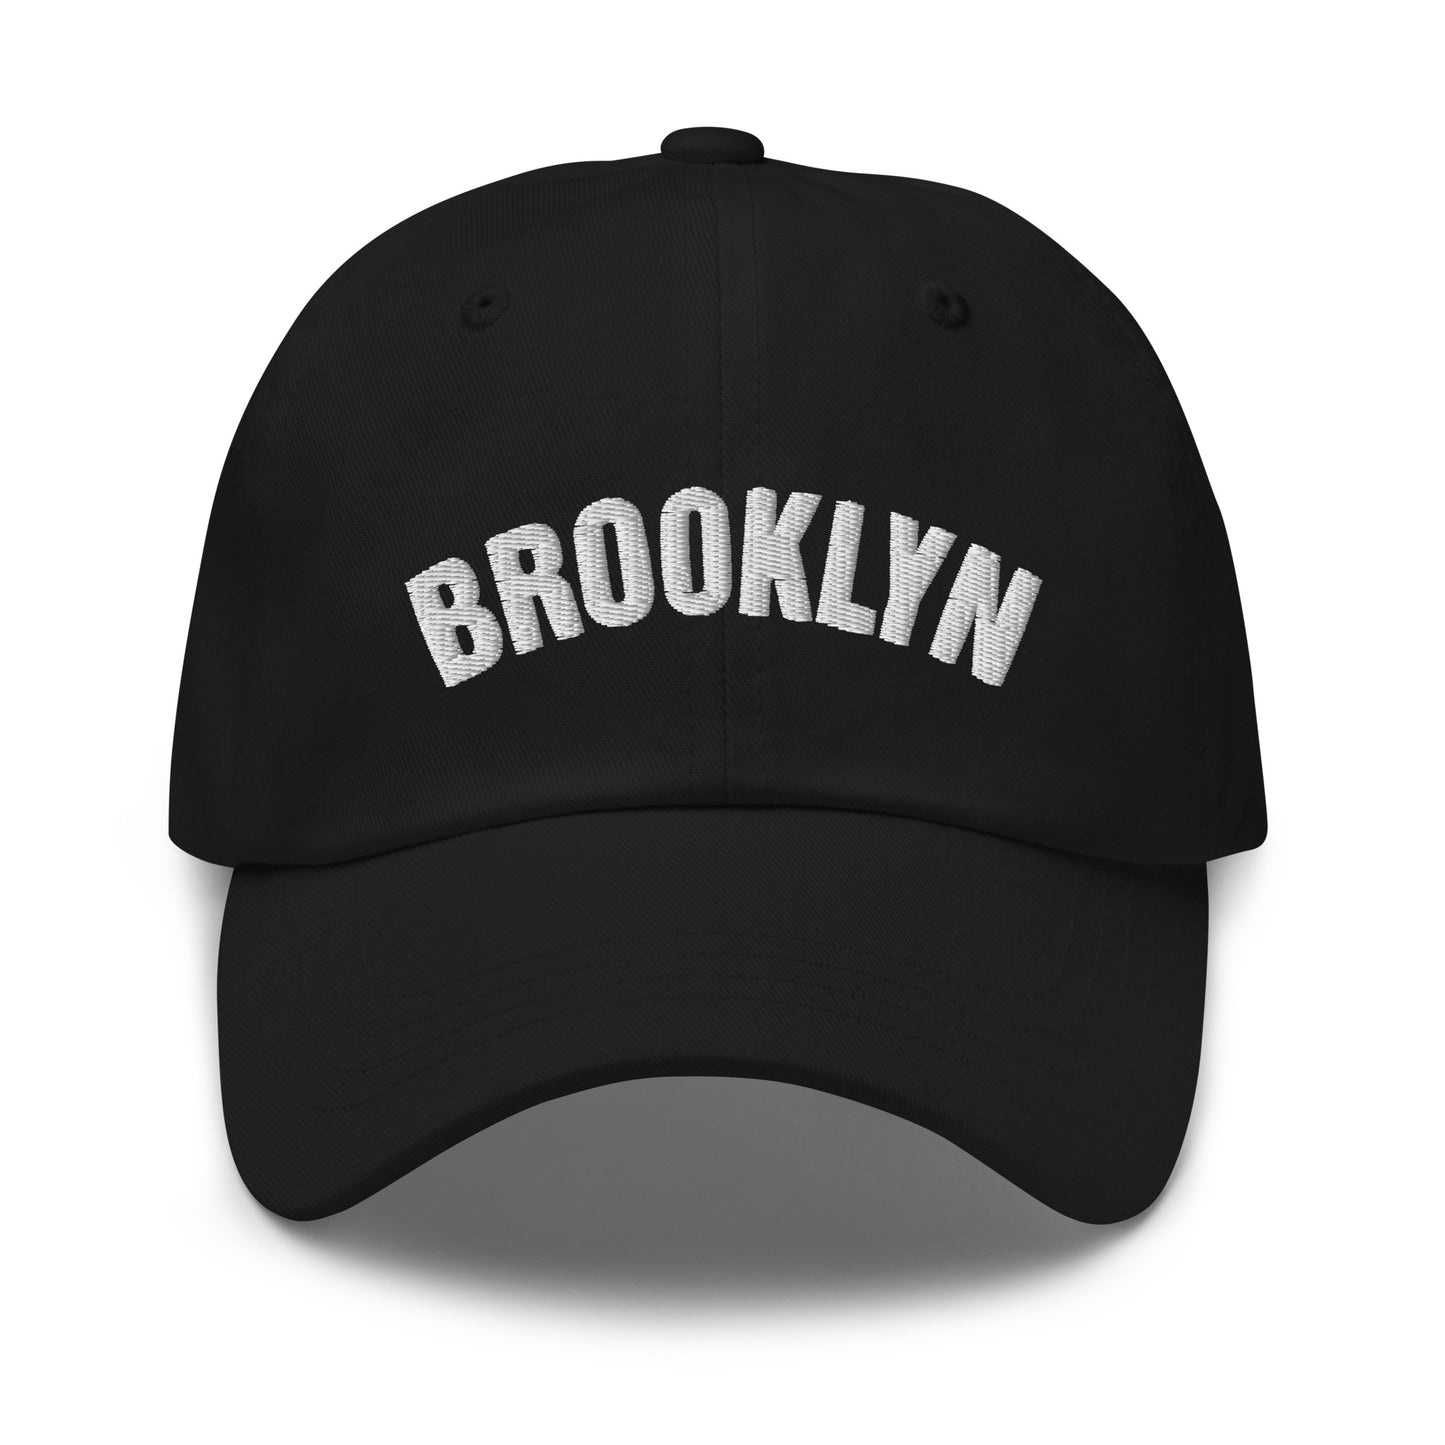 Brooklyn baseball cap in black- Miss O Cool Girls logo on back